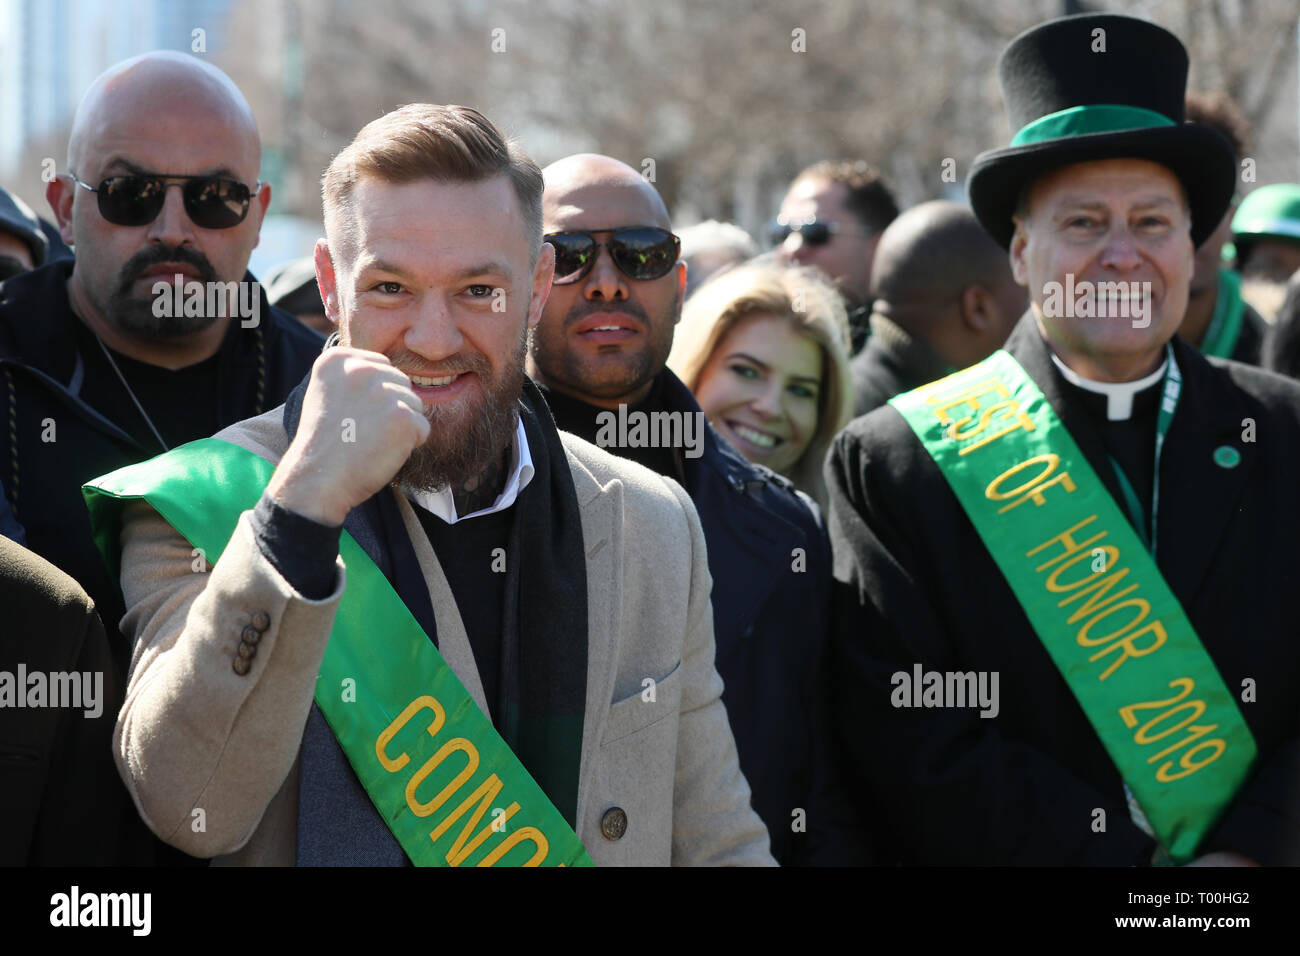 Irische Mixed Martial Artist Conor McGregor verbindet die St. Patrick's Day Parade in Chicago. Stockfoto